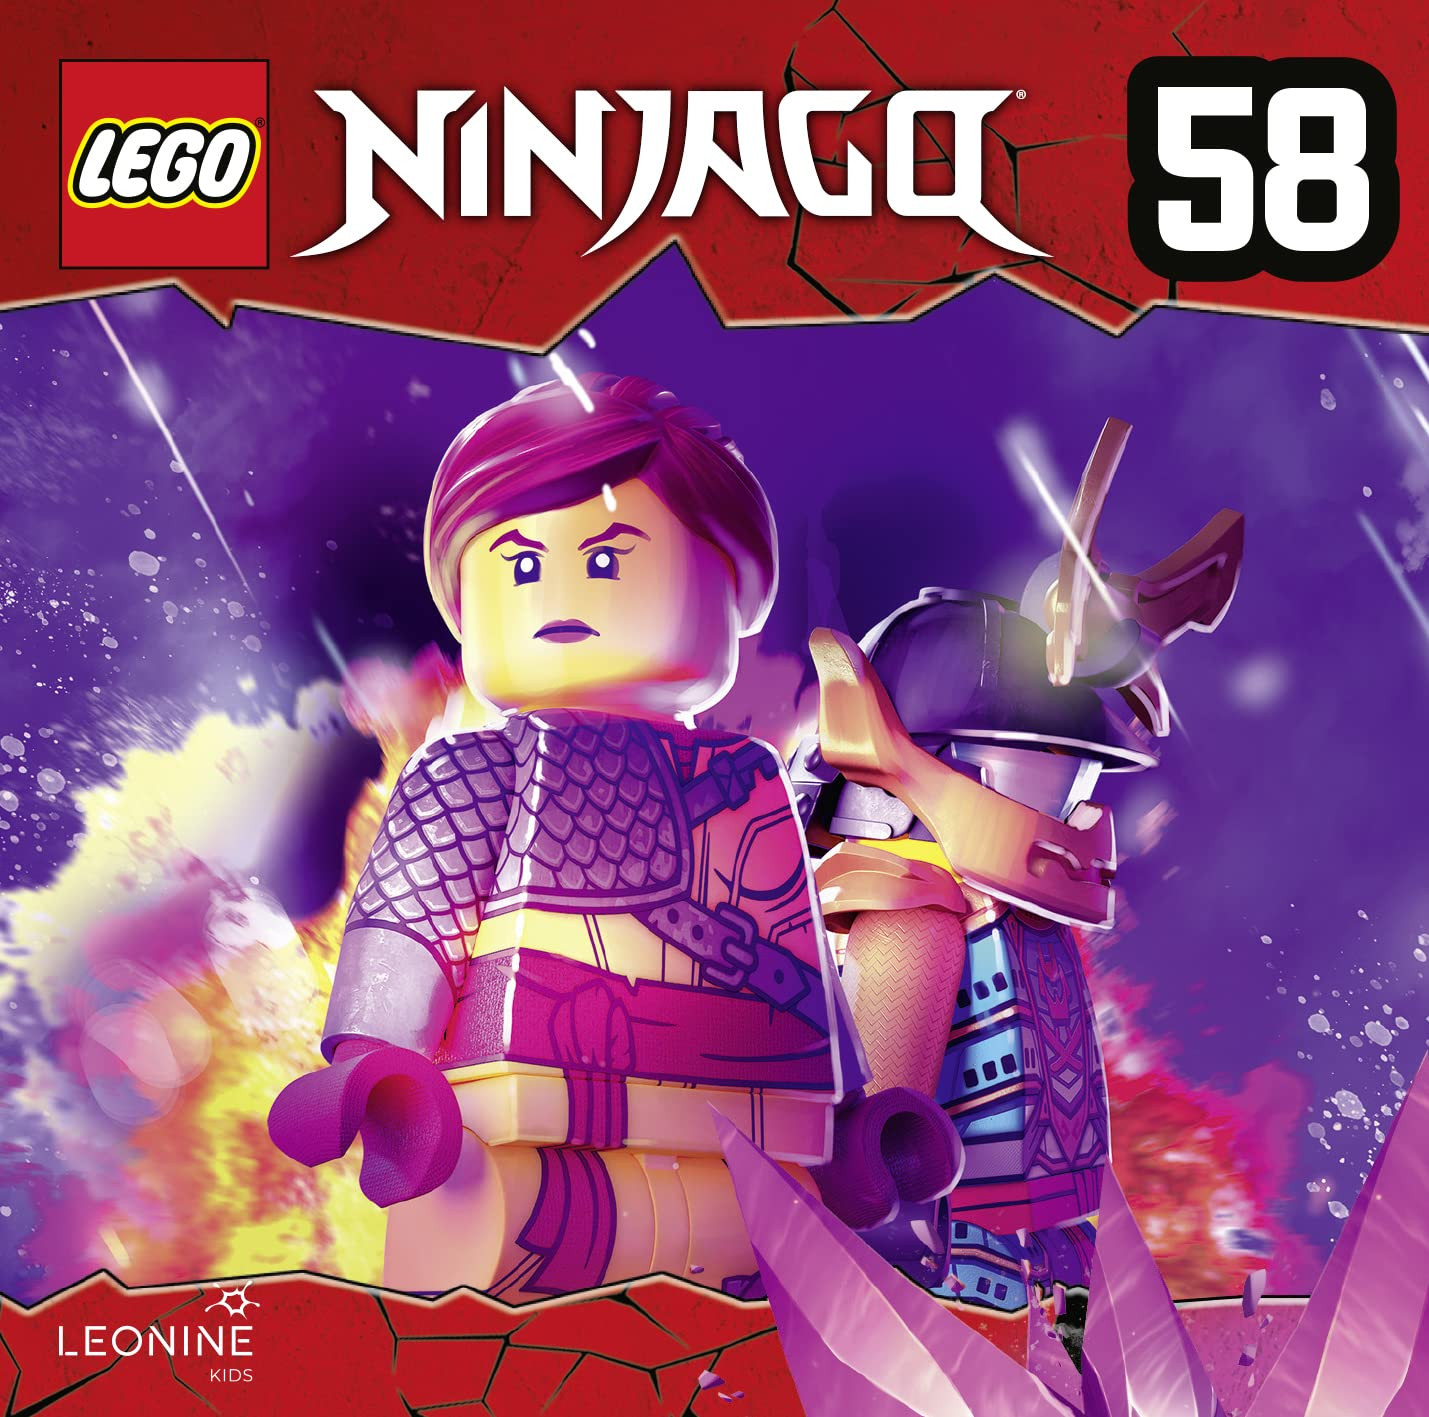 LEGO Ninjago (CD 58)